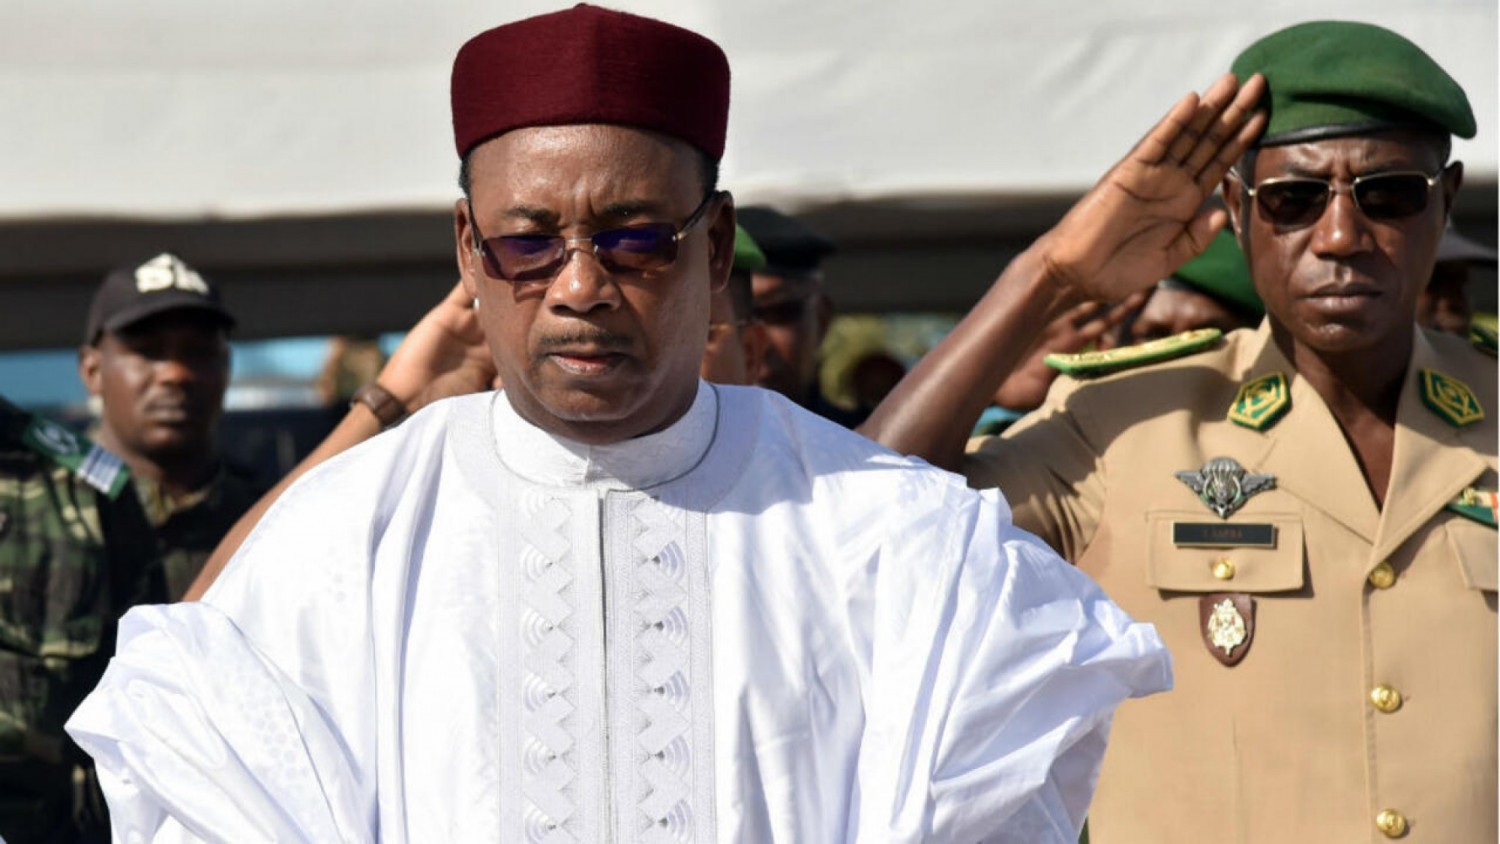 Niger : Accusé d'avoir joué un rôle dans le putsch : « Je me sens insulté, c'est archi faux », affirme Mahamadou Issoufou